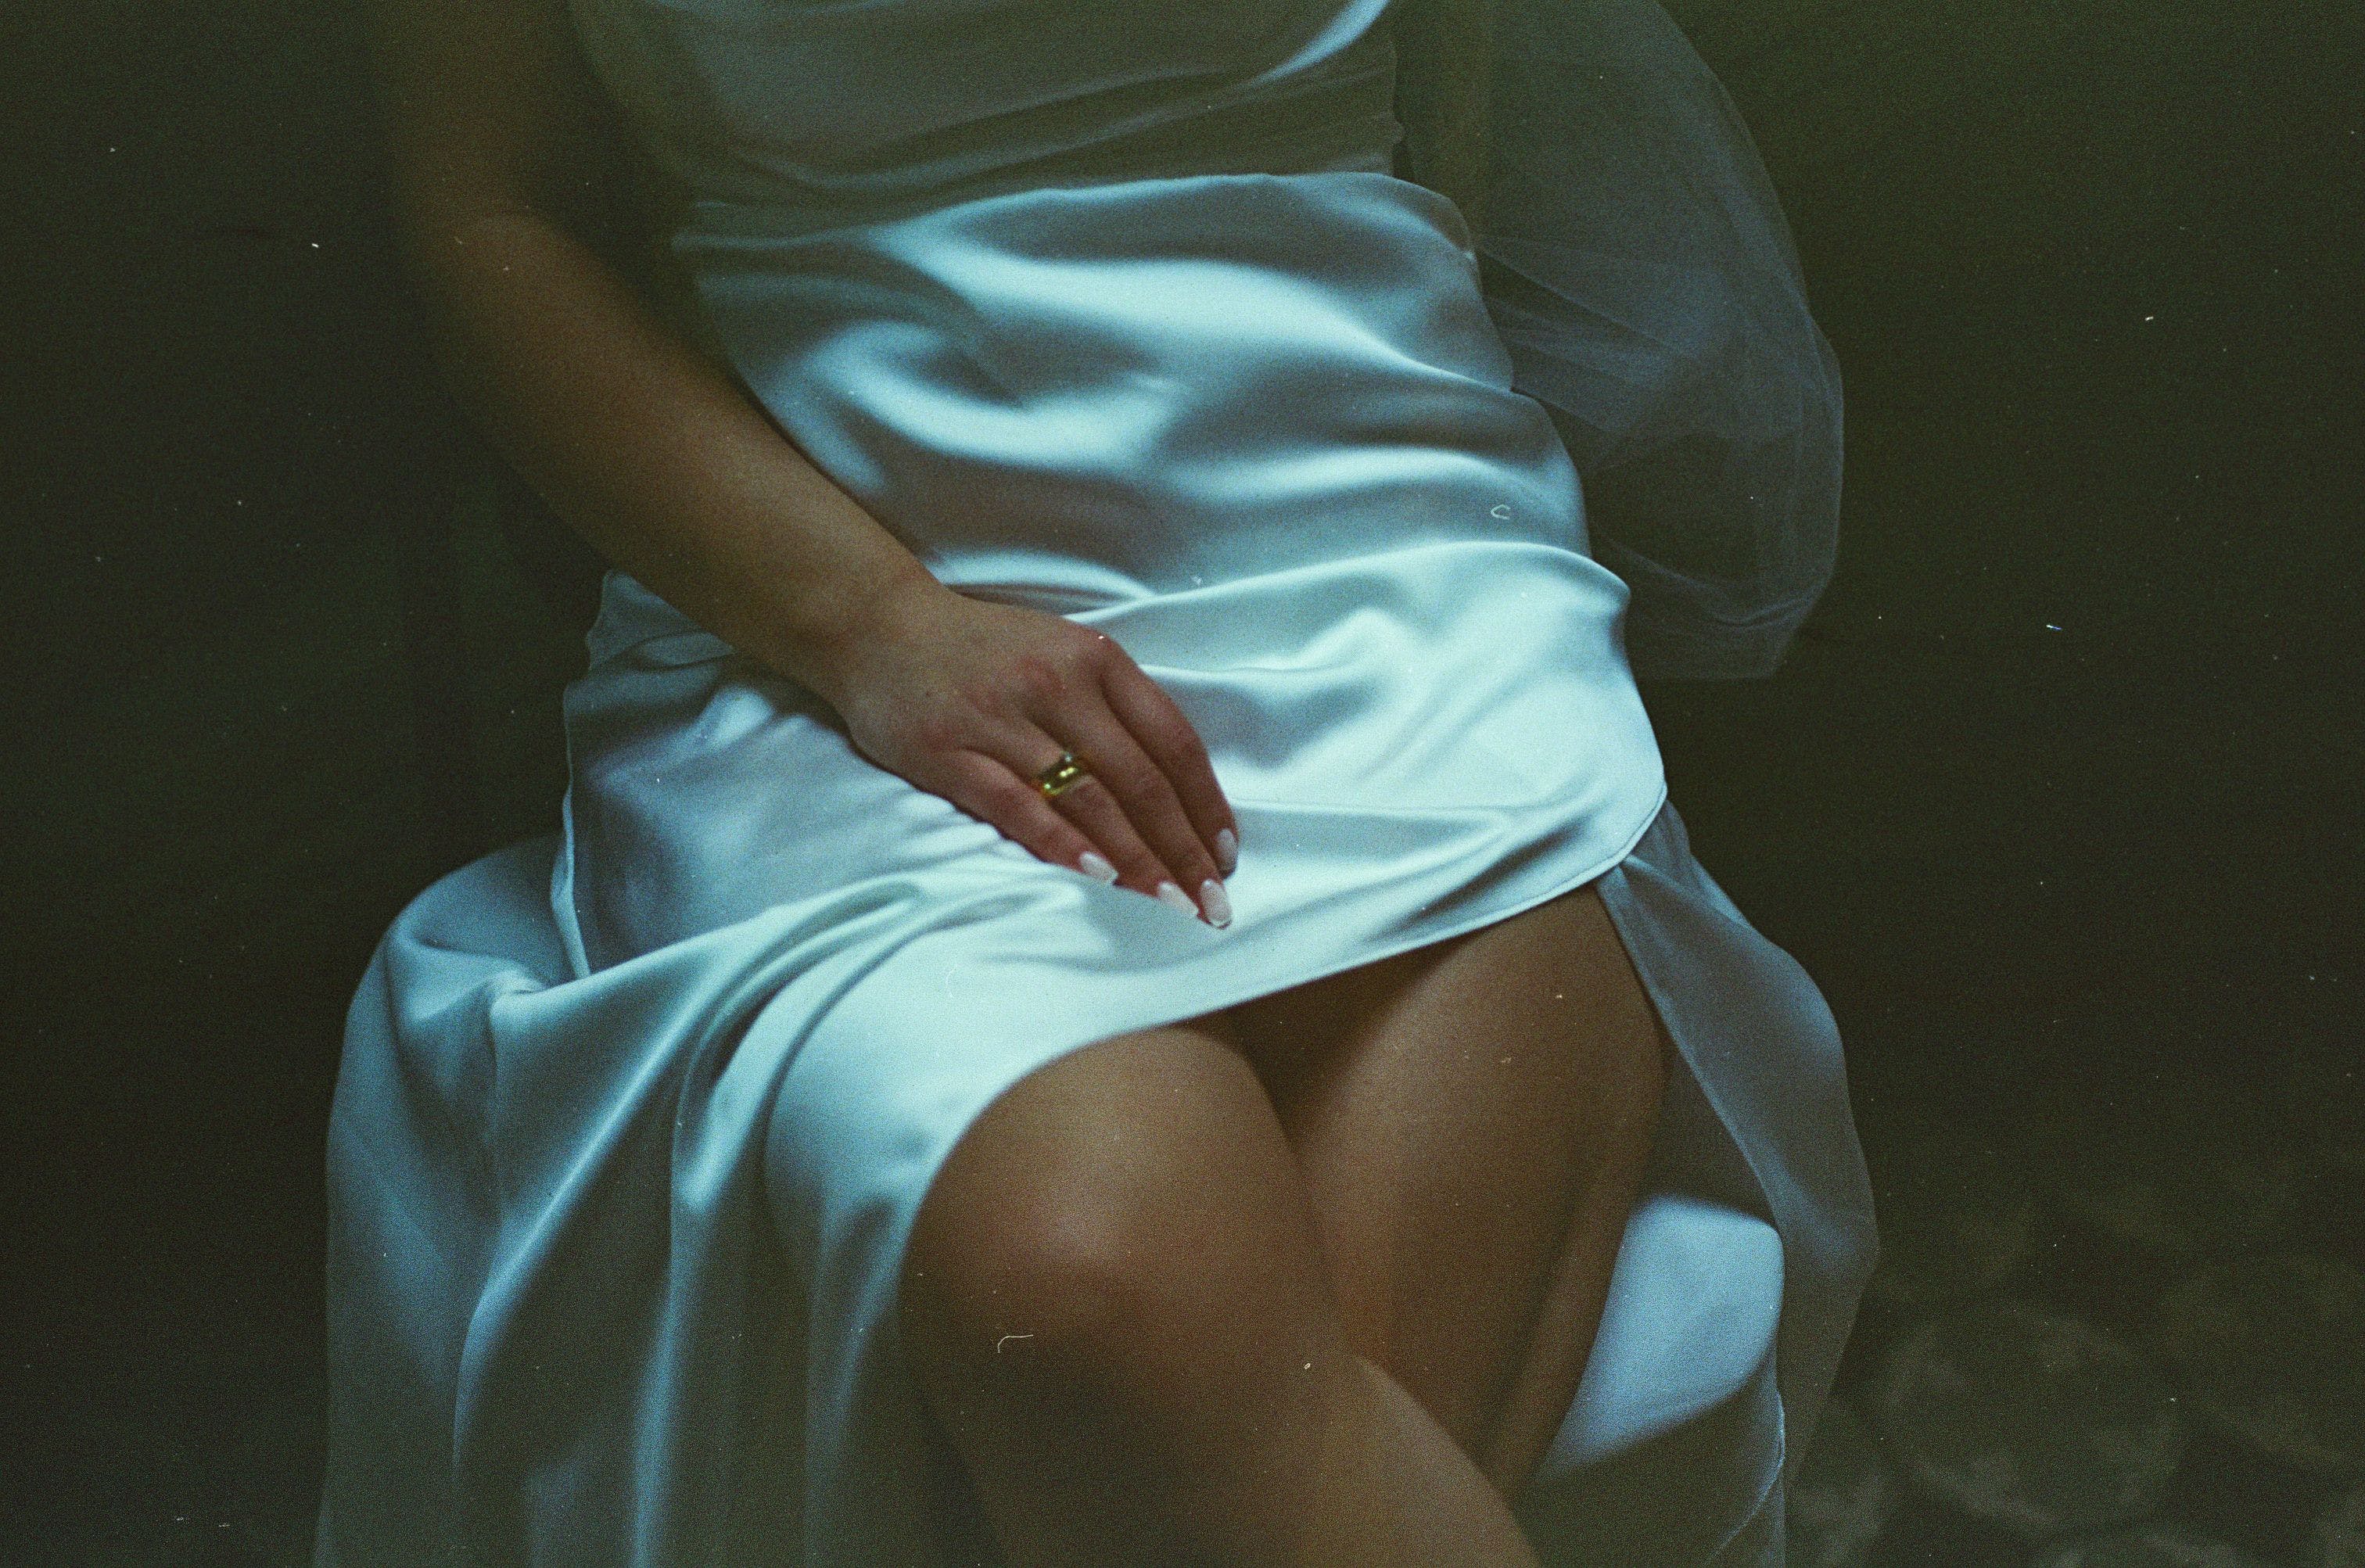 Une robe simple | Source : Pexels